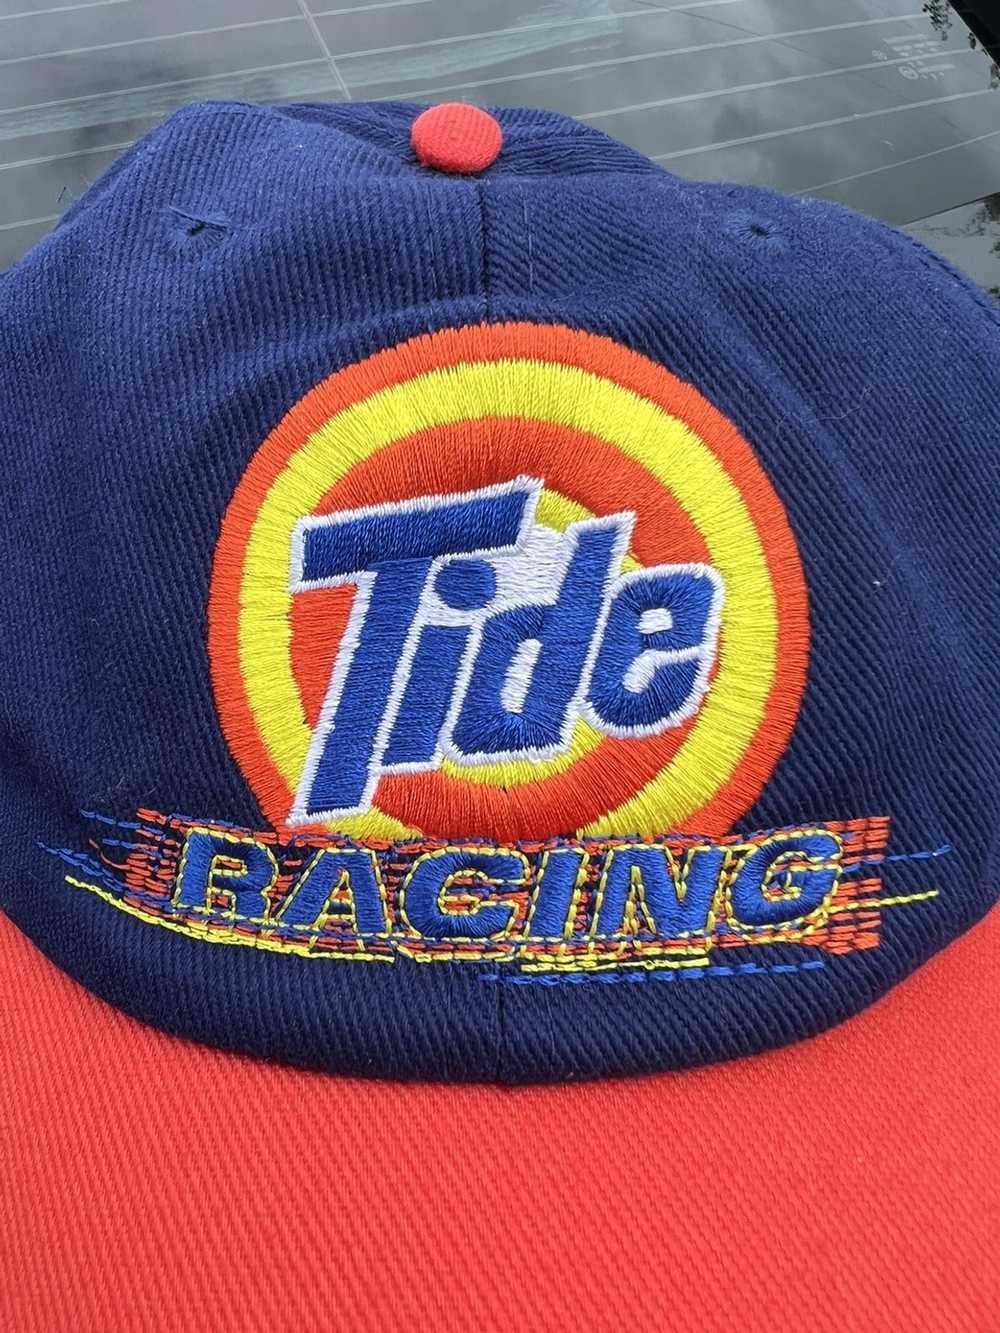 NASCAR × Vintage Vintage Tide Racing Nascar hat - image 2